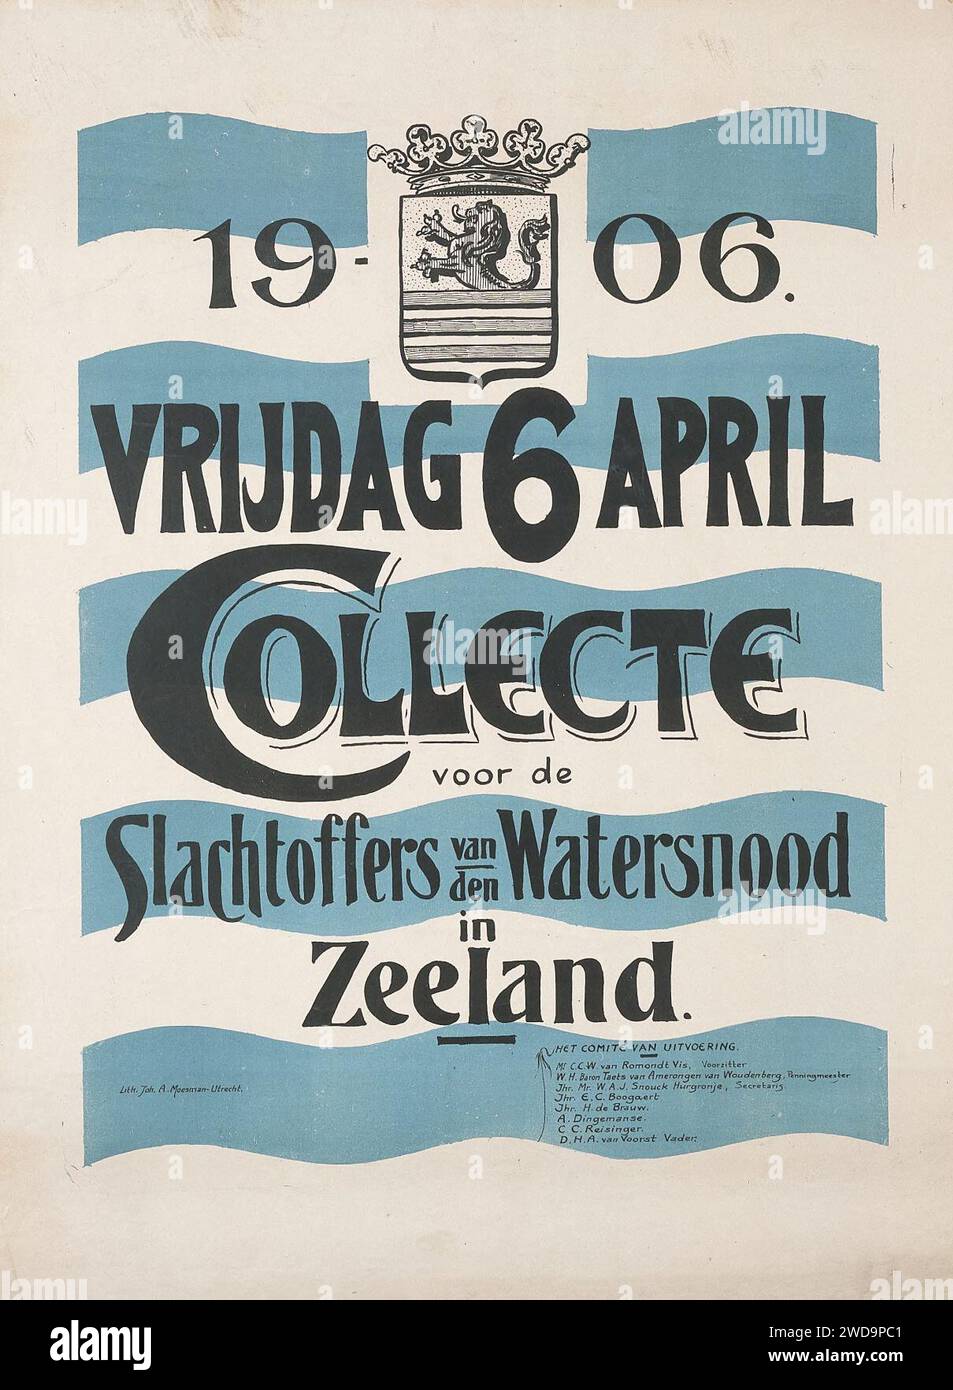 1906 april 6 Collecte voor de slachtoffers van den watersnood in Zeeland - Joh. A. Moesman (lith) affiche Stock Photo